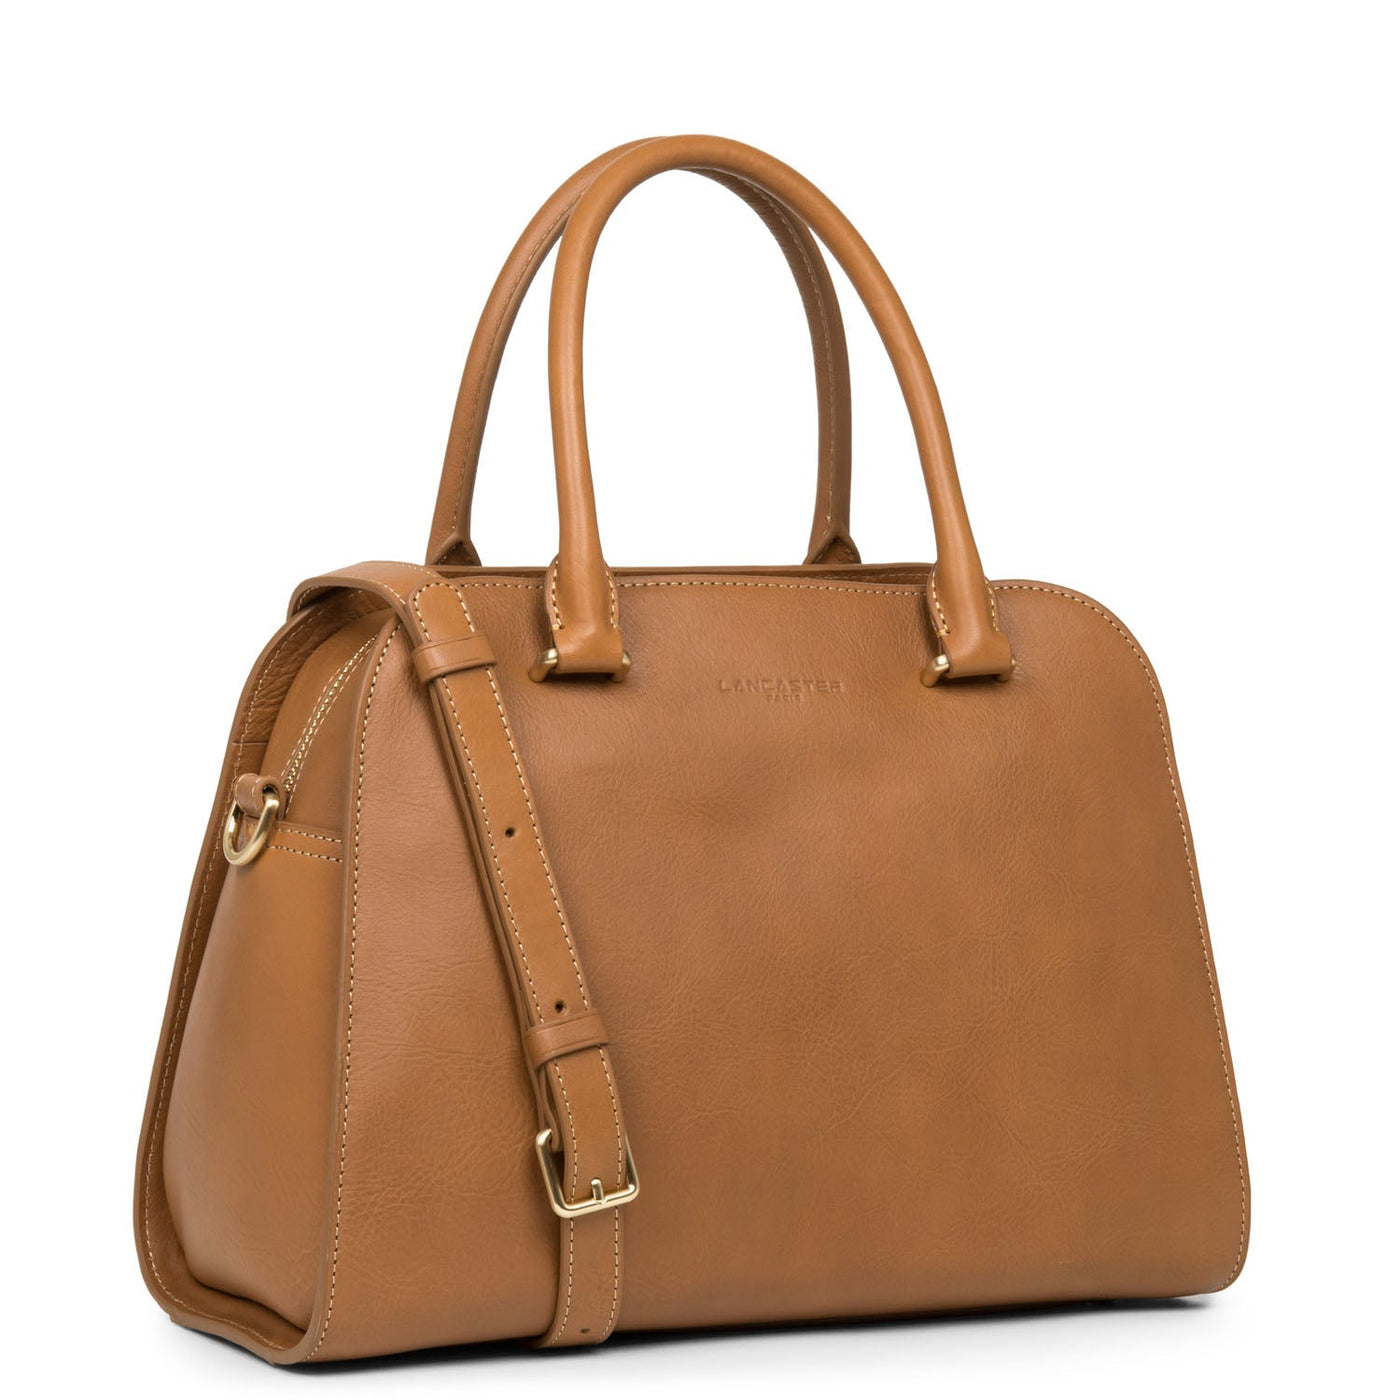 handbag - légende #couleur_camel